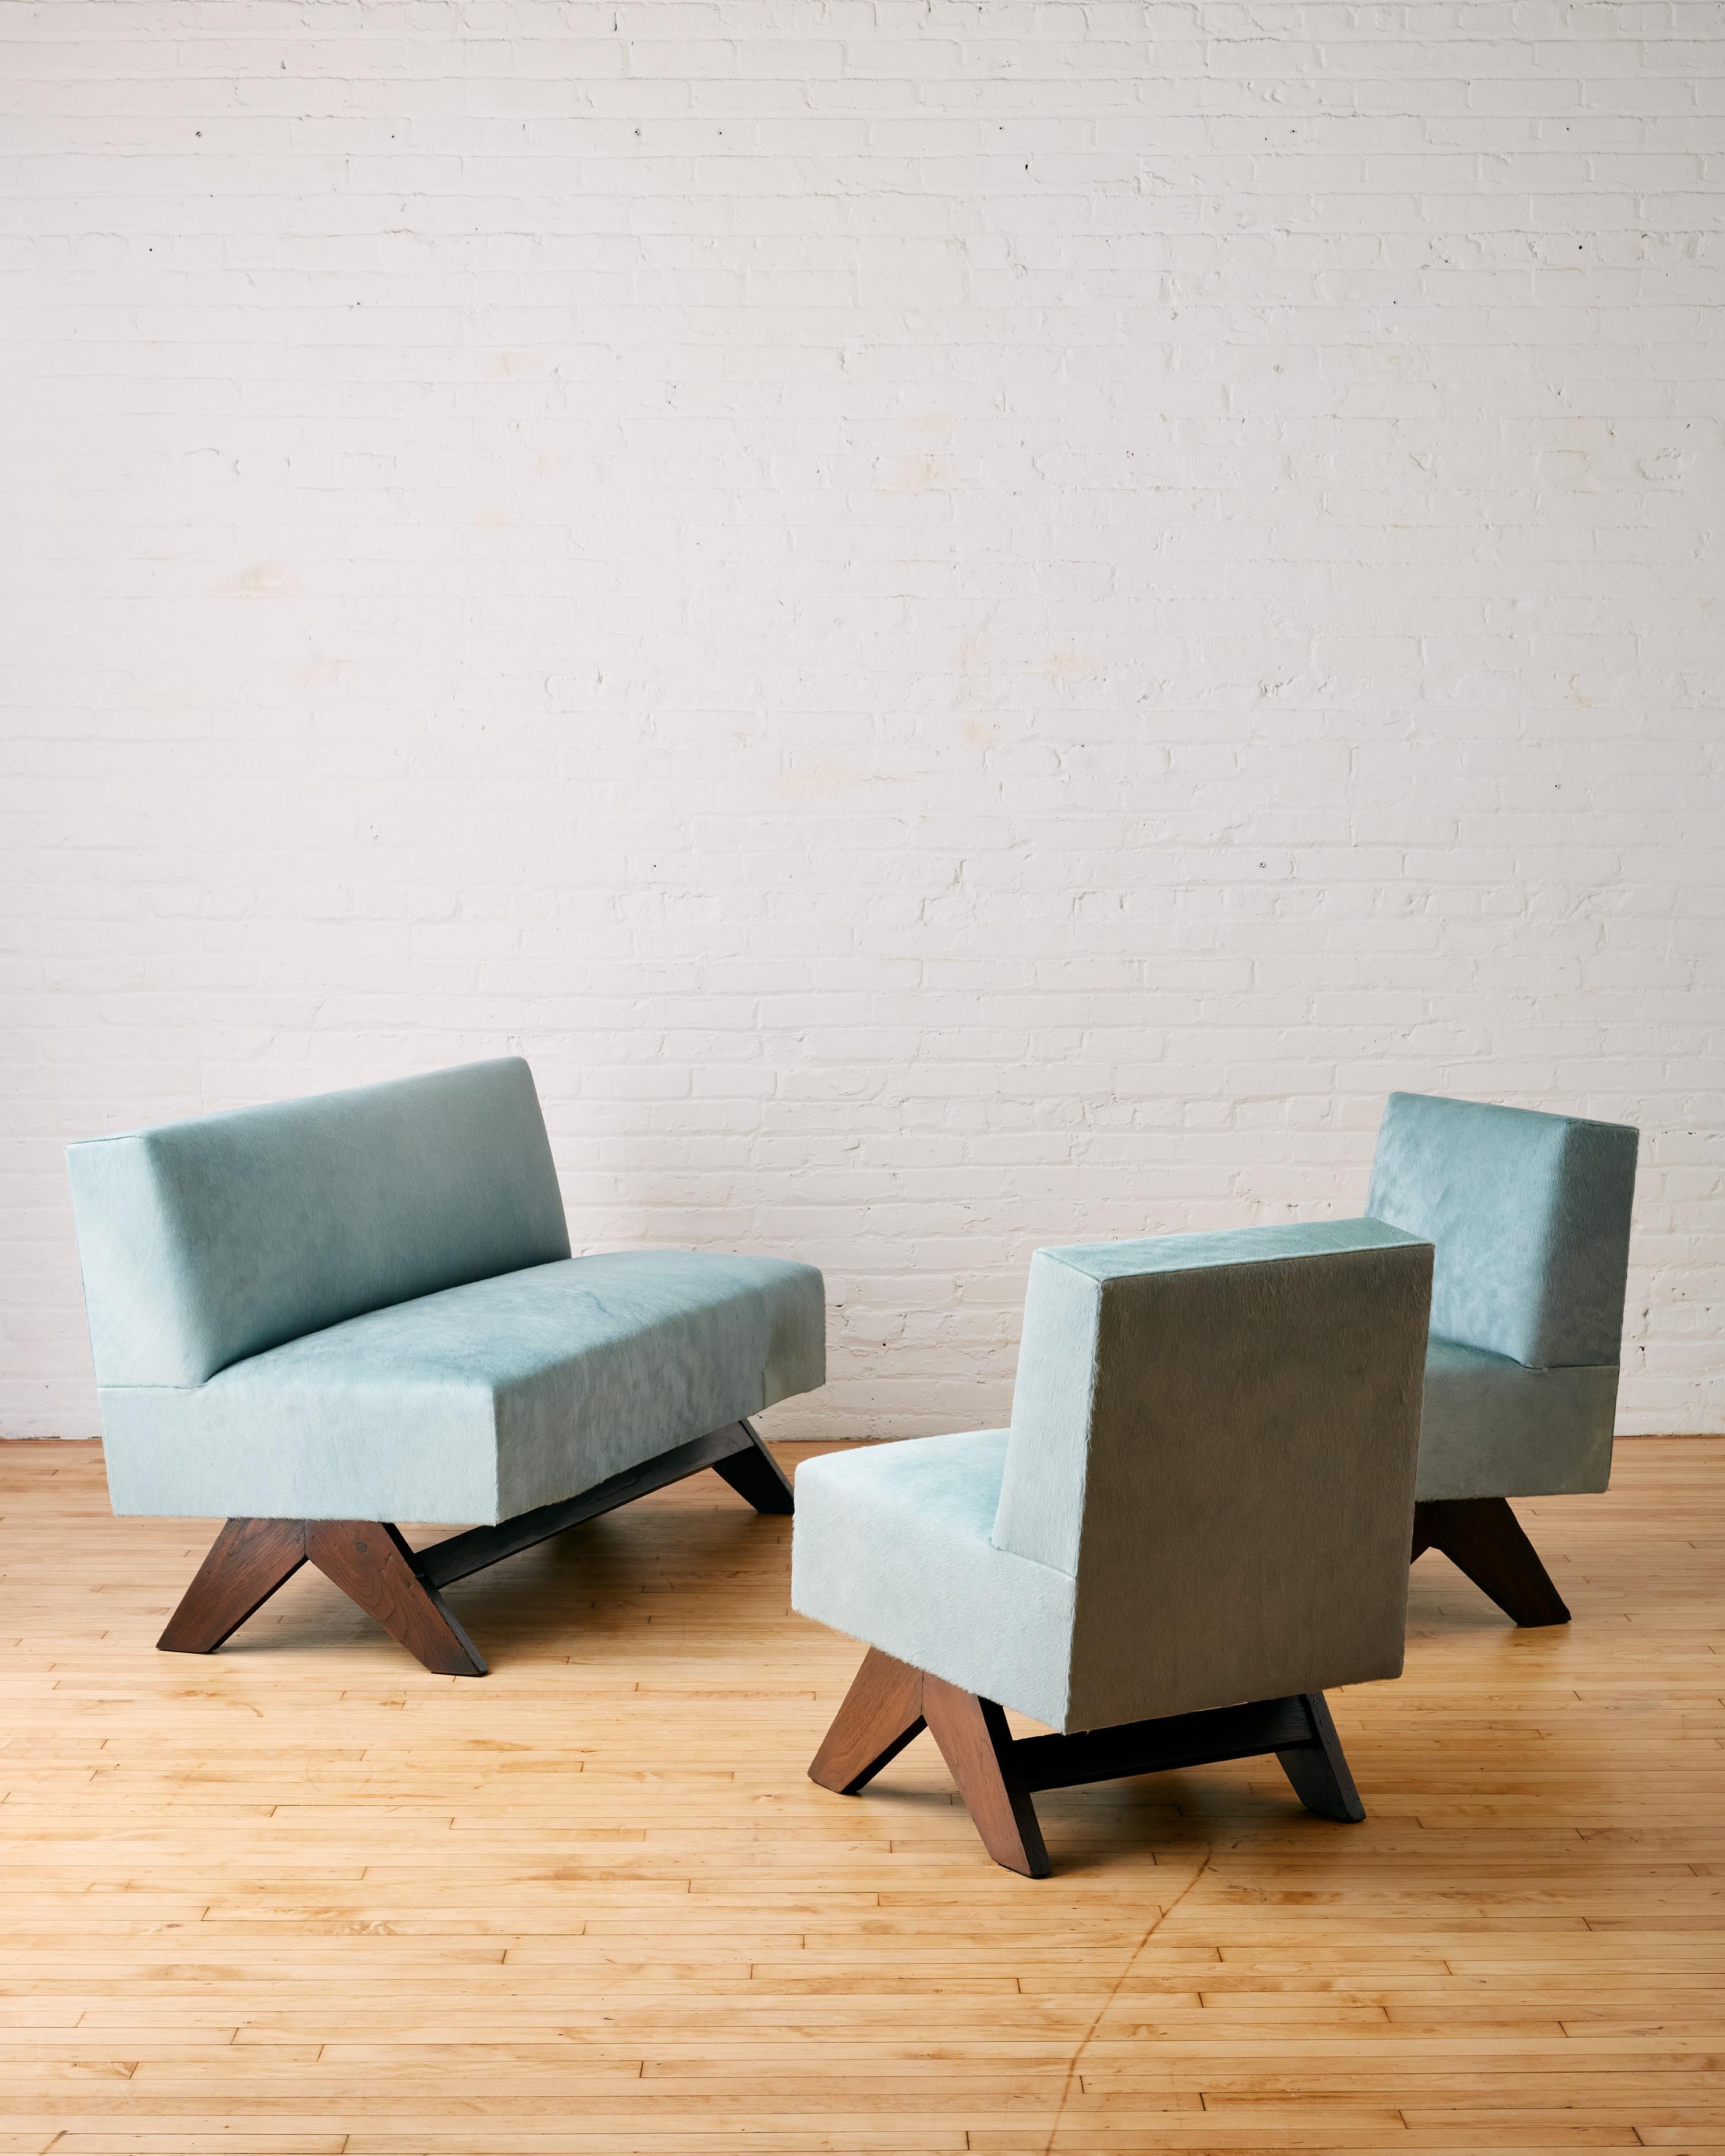 Seltenes Sofa und zwei niedrige Loungesessel von Pierre Jeanneret mit Beinen aus Teakholz in umgekehrtem Zirkel, gepolstert mit italienischem geschorenem Rindsleder

Die Sette- und Lounge-Stühle wurden von MS, New York, fachmännisch konserviert. Die